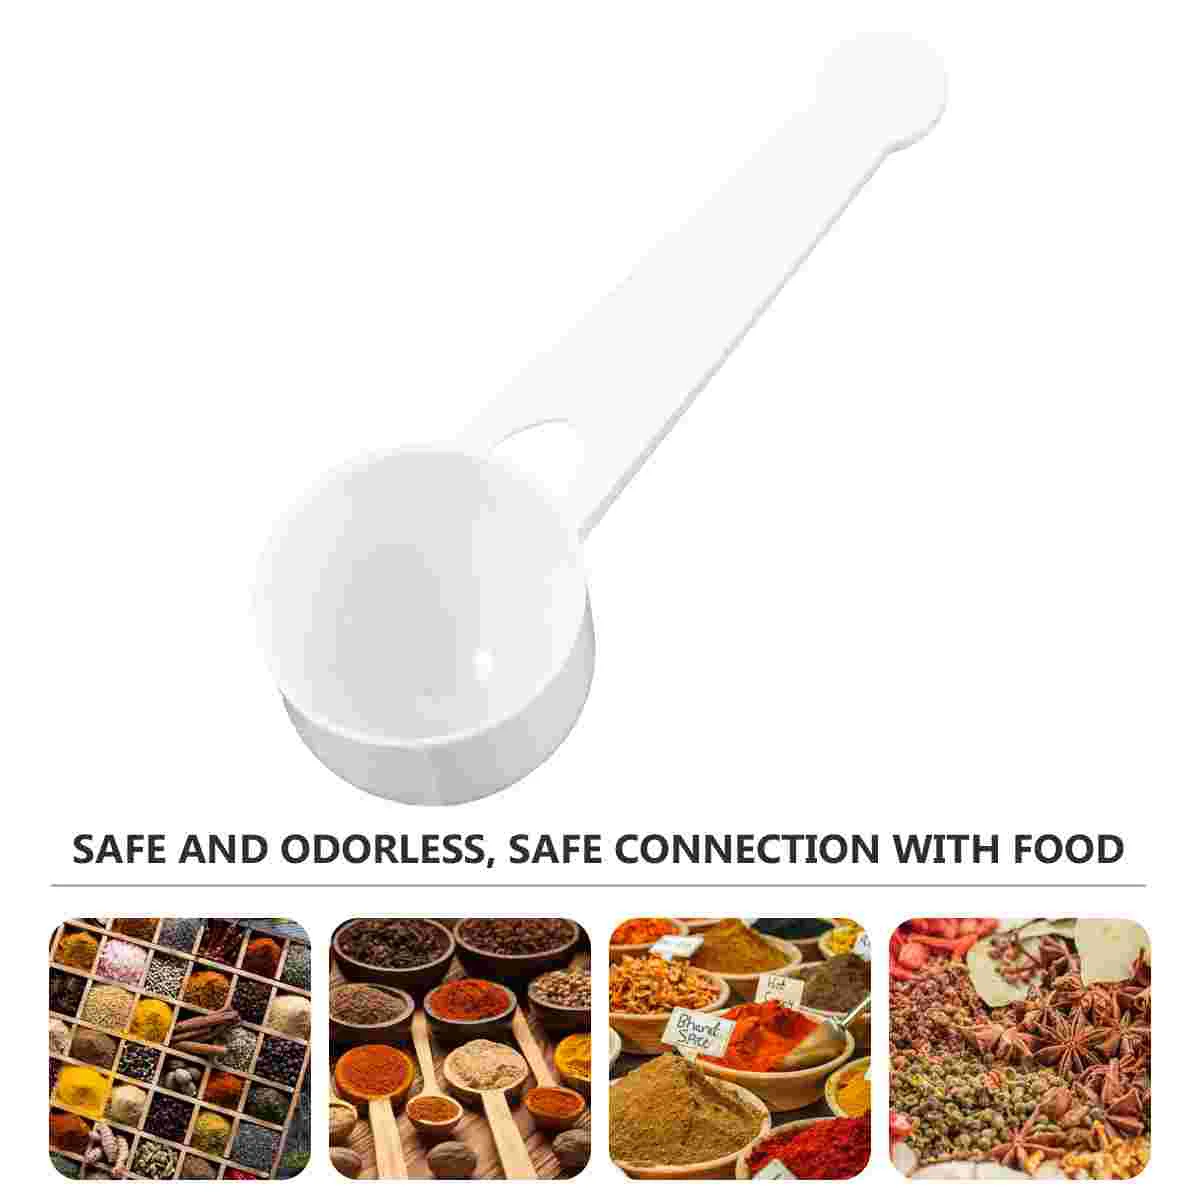 100 шт. мини ложка для измерения, инструменты для приготовления пищи, ручка 10,5x3,5X3 см, белая пластиковая столовая ложка